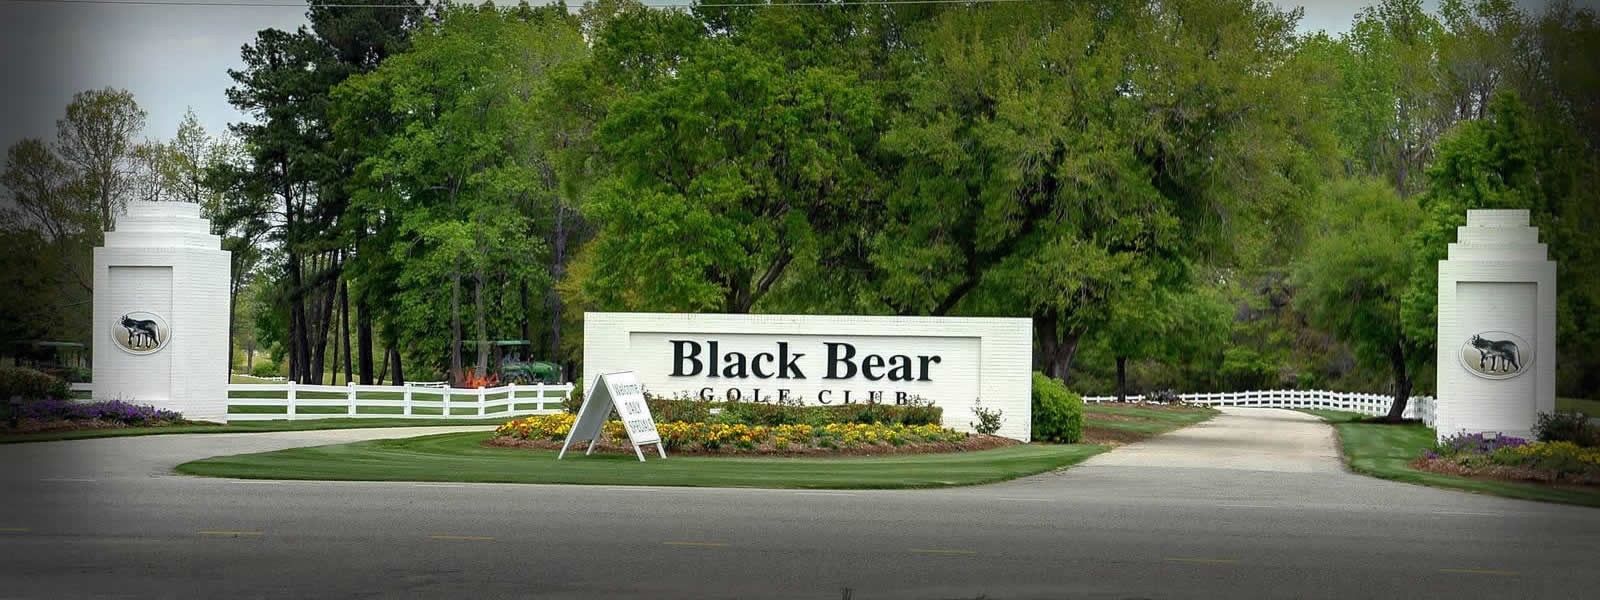 Black Bear Golf Club Golf Outing